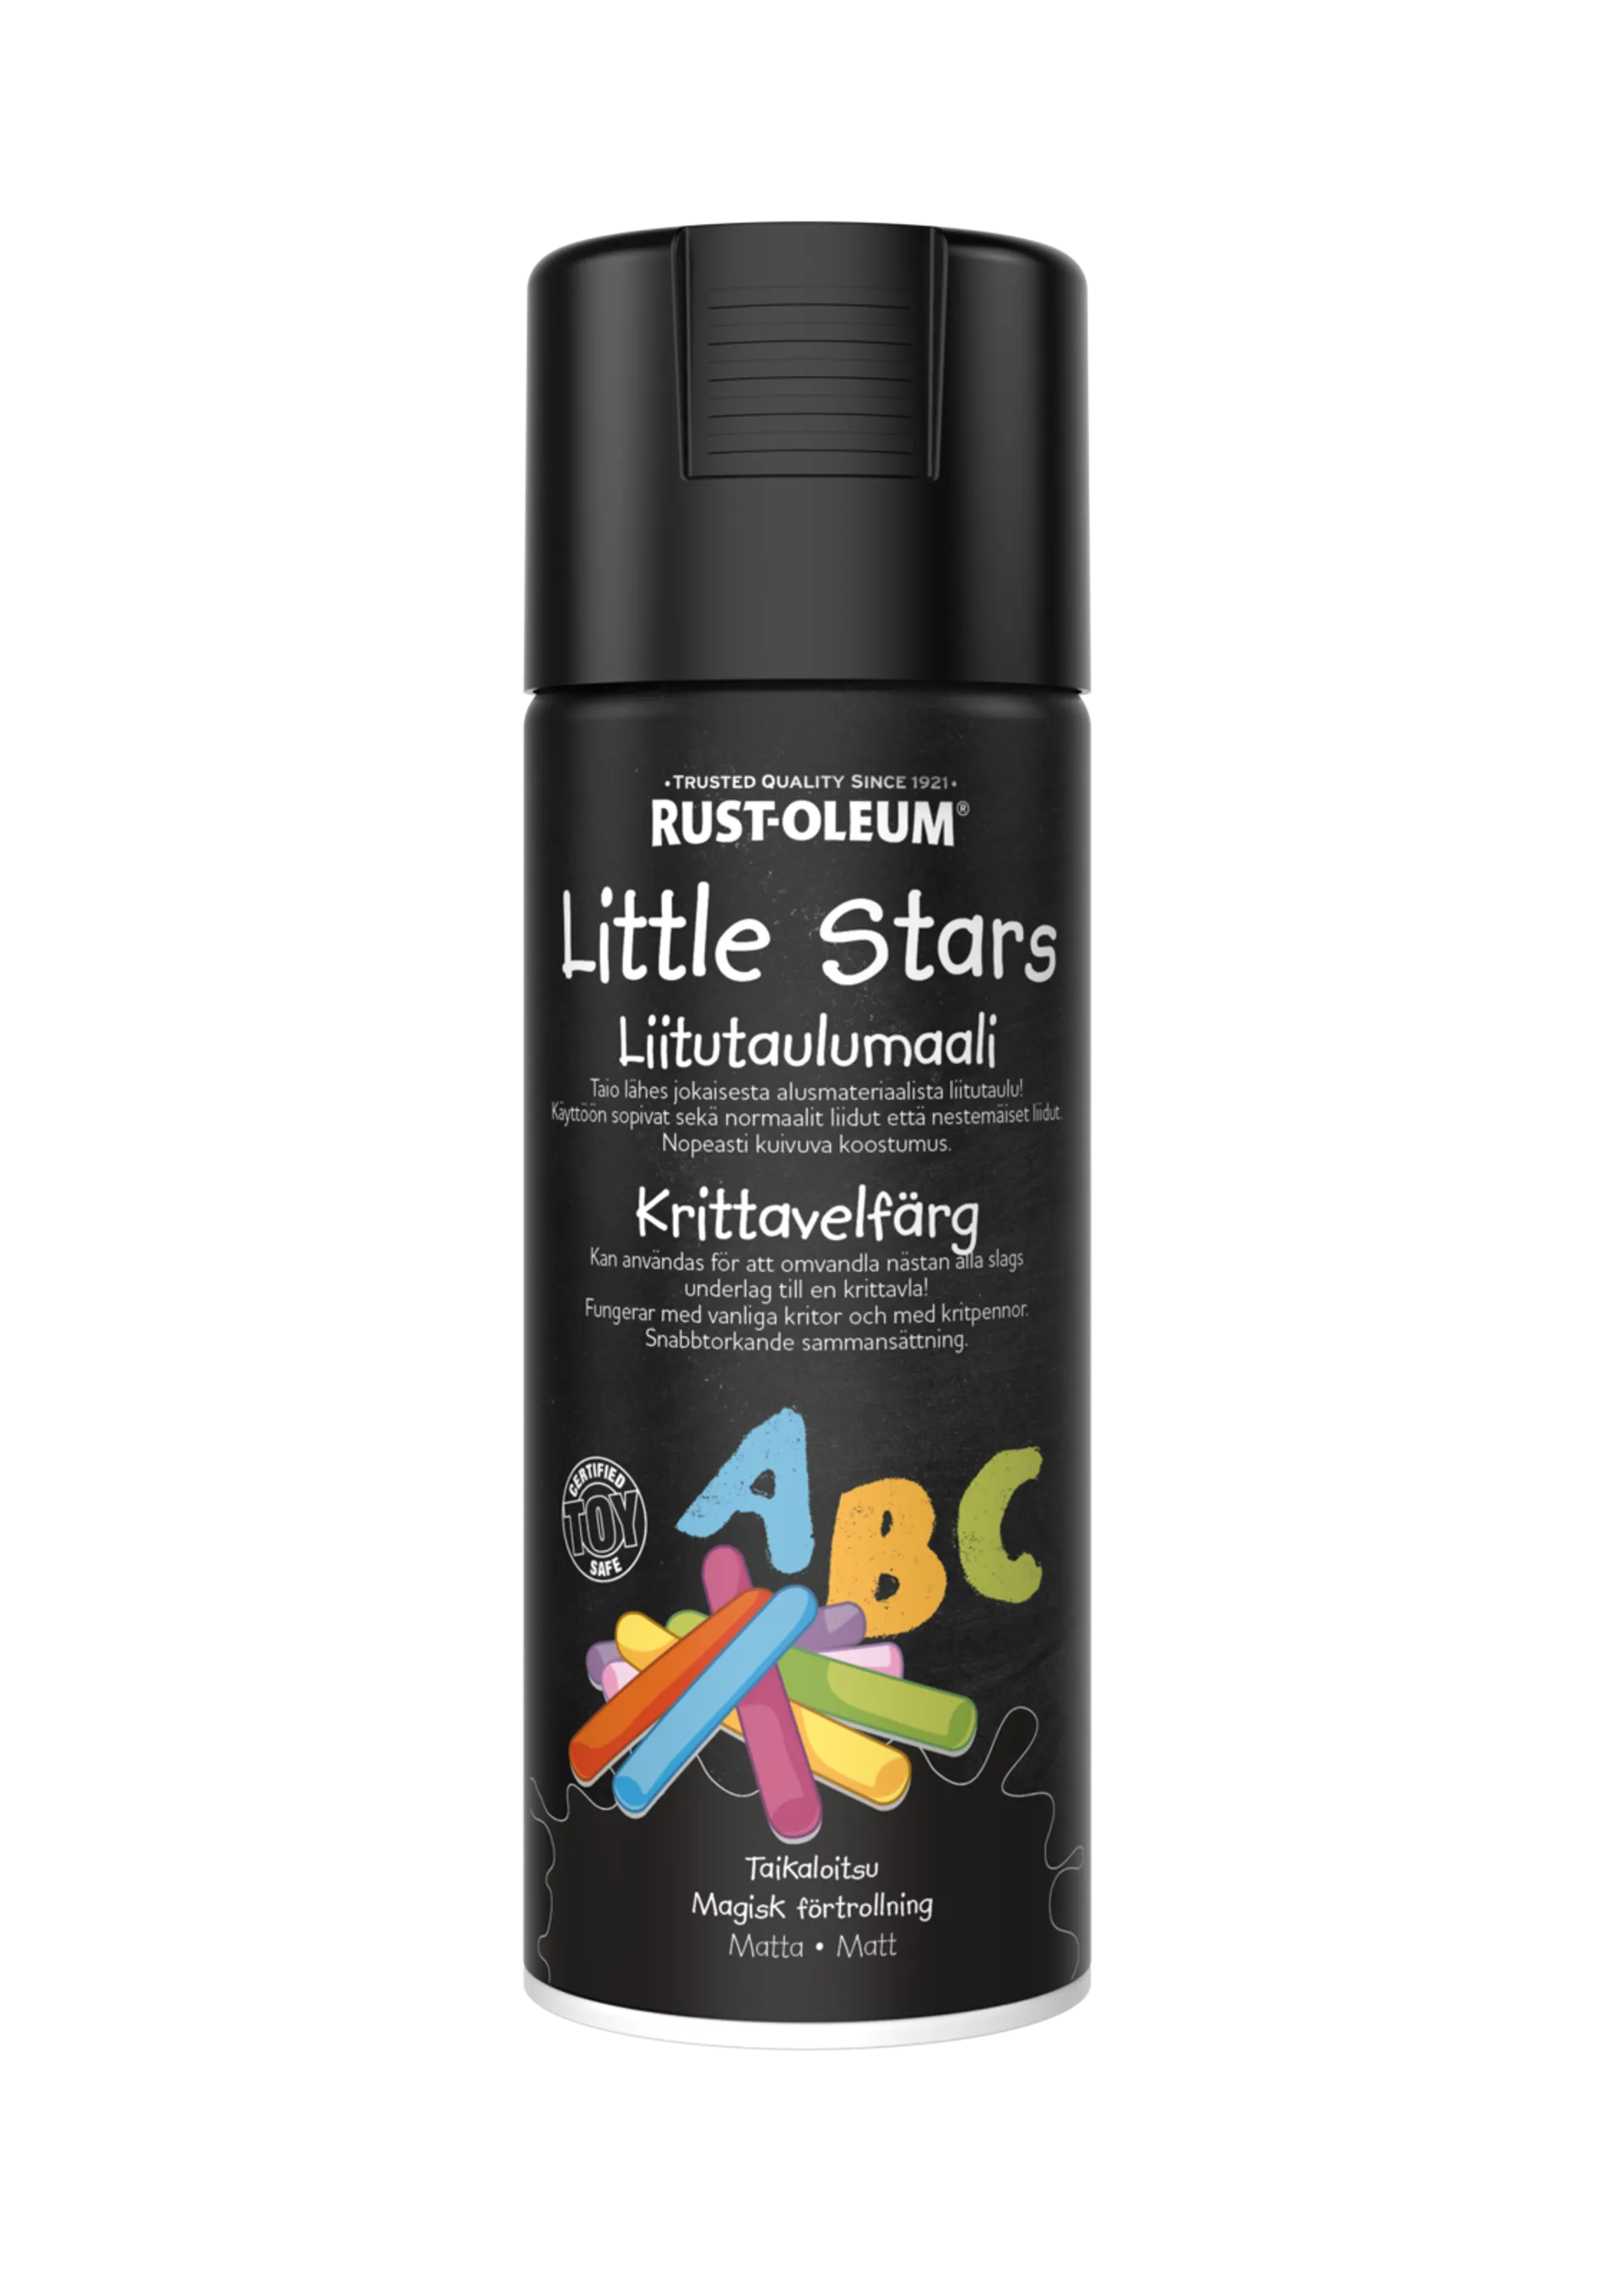 Rust-Oleum Little Stars Liitutaulumaali spray 400ml Taikaloitsu